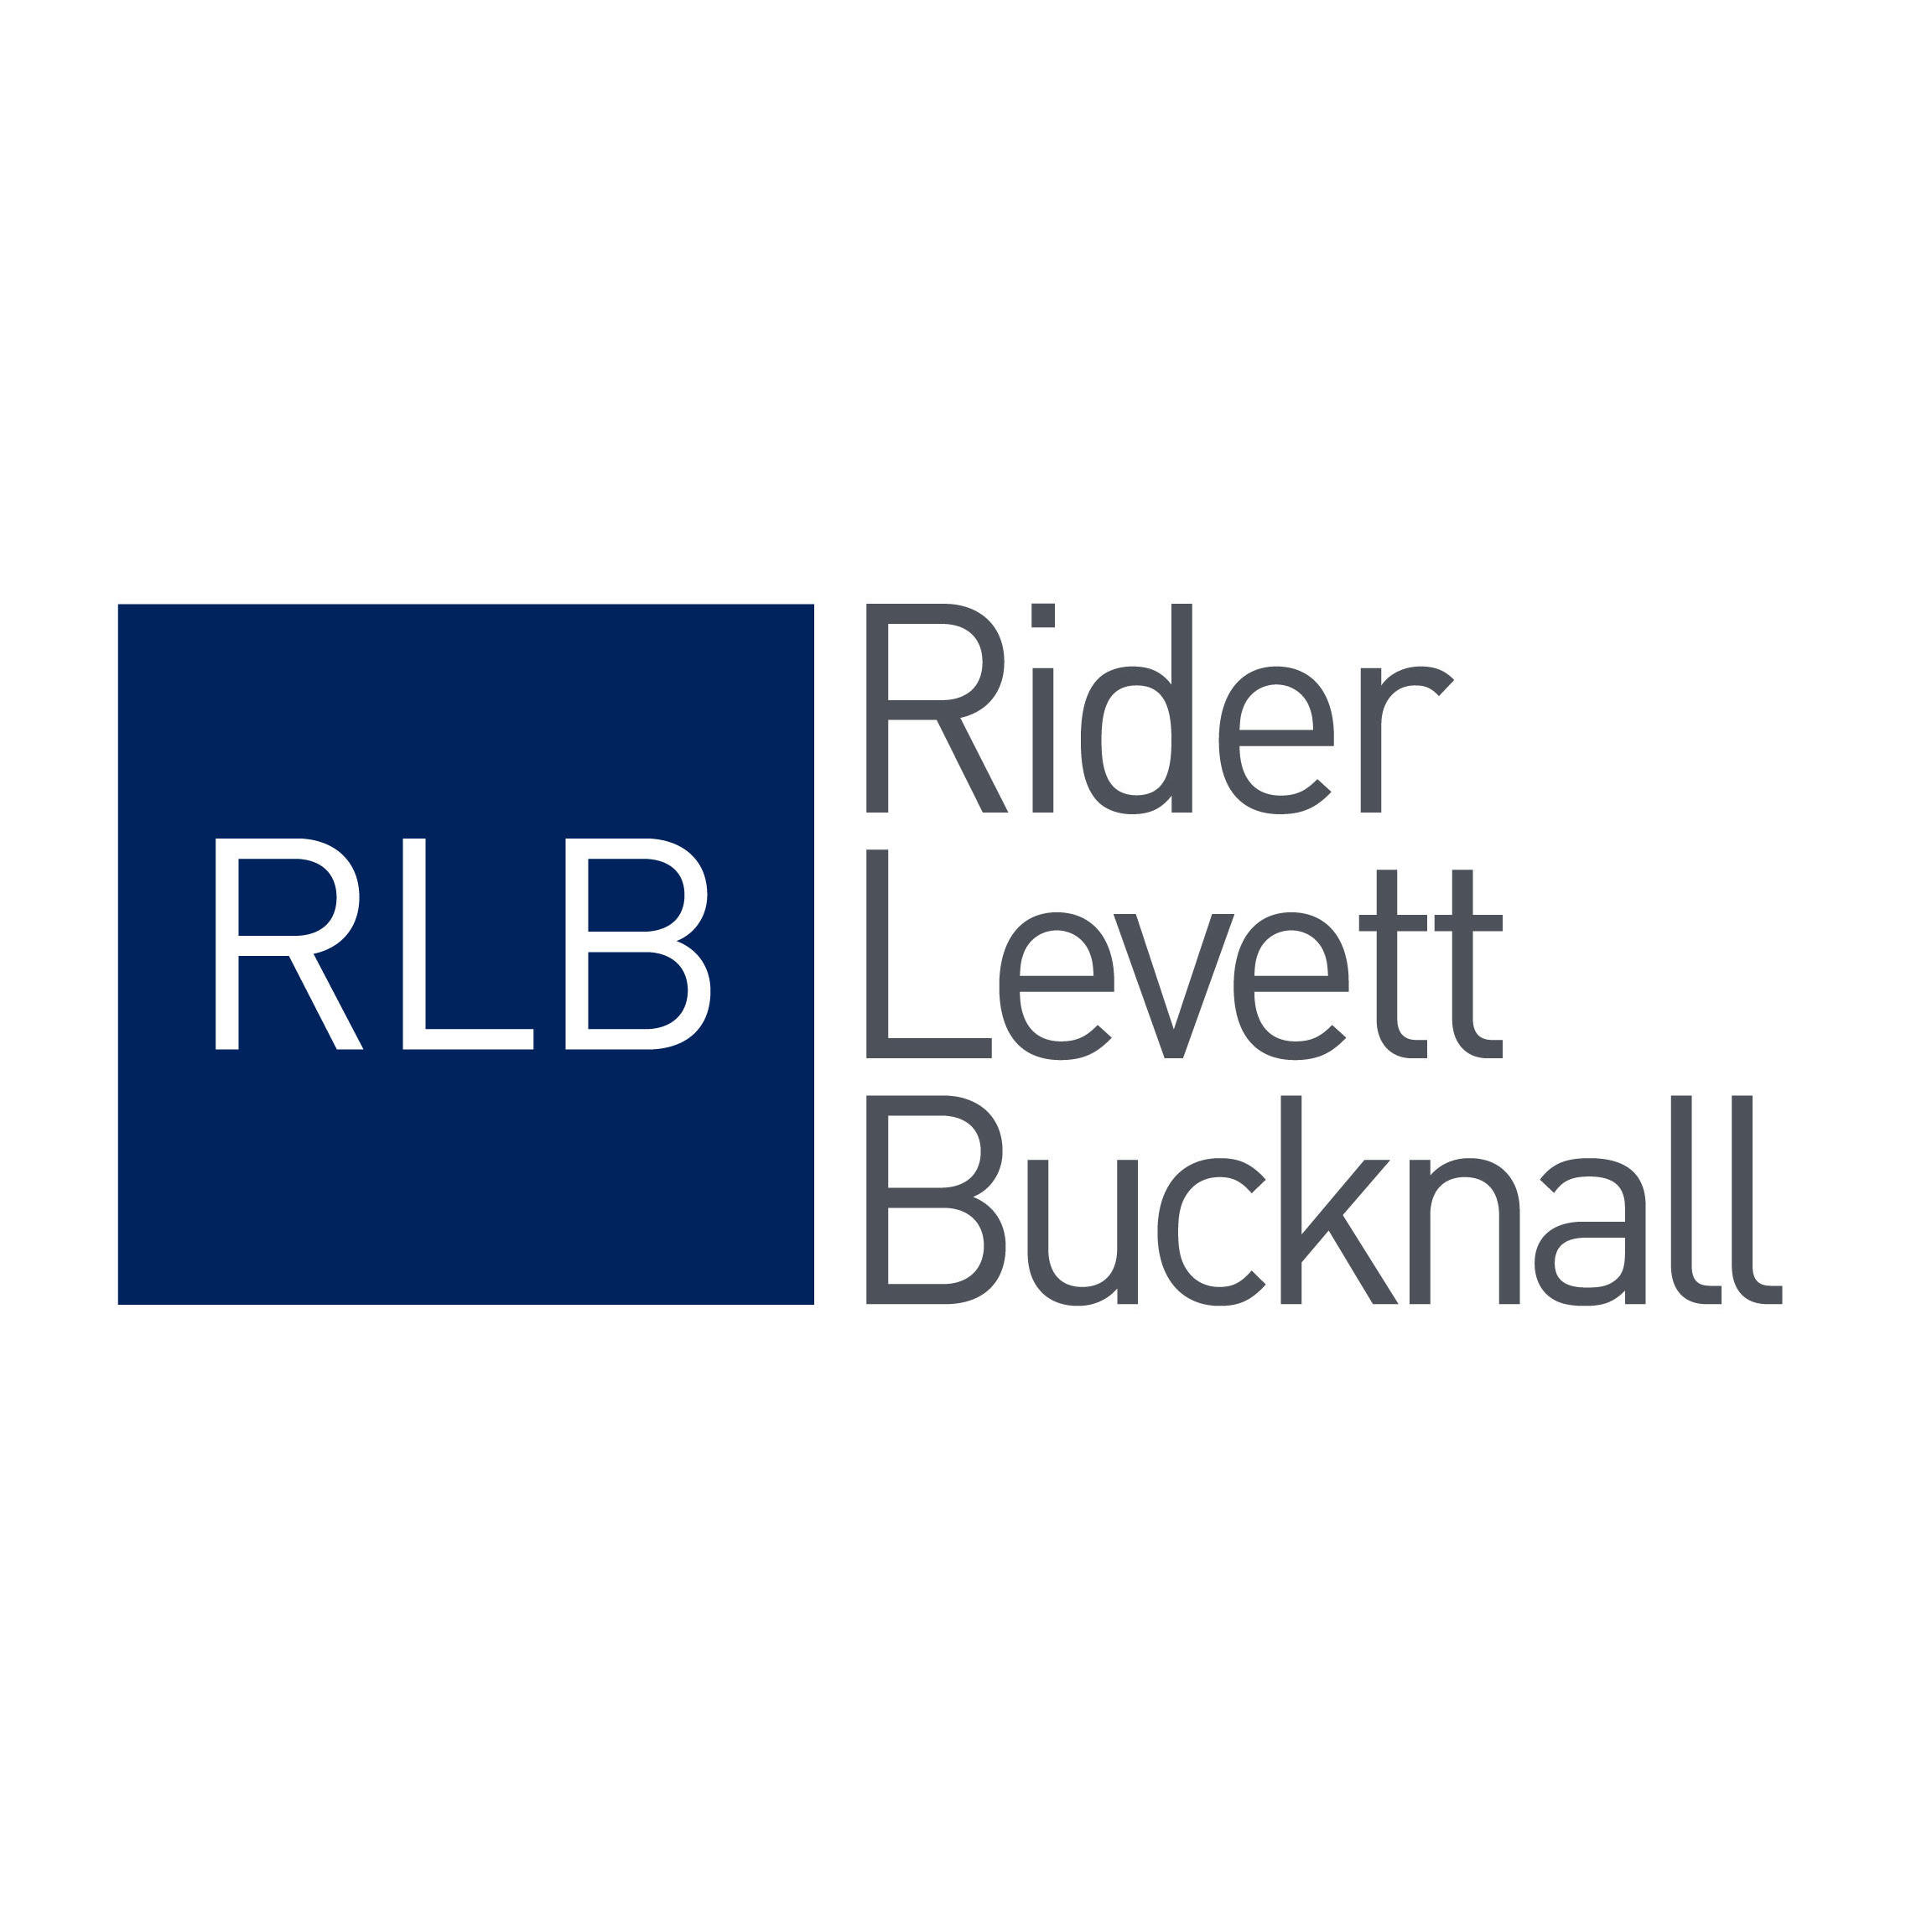 Rider Levett Bucknall Newcastle